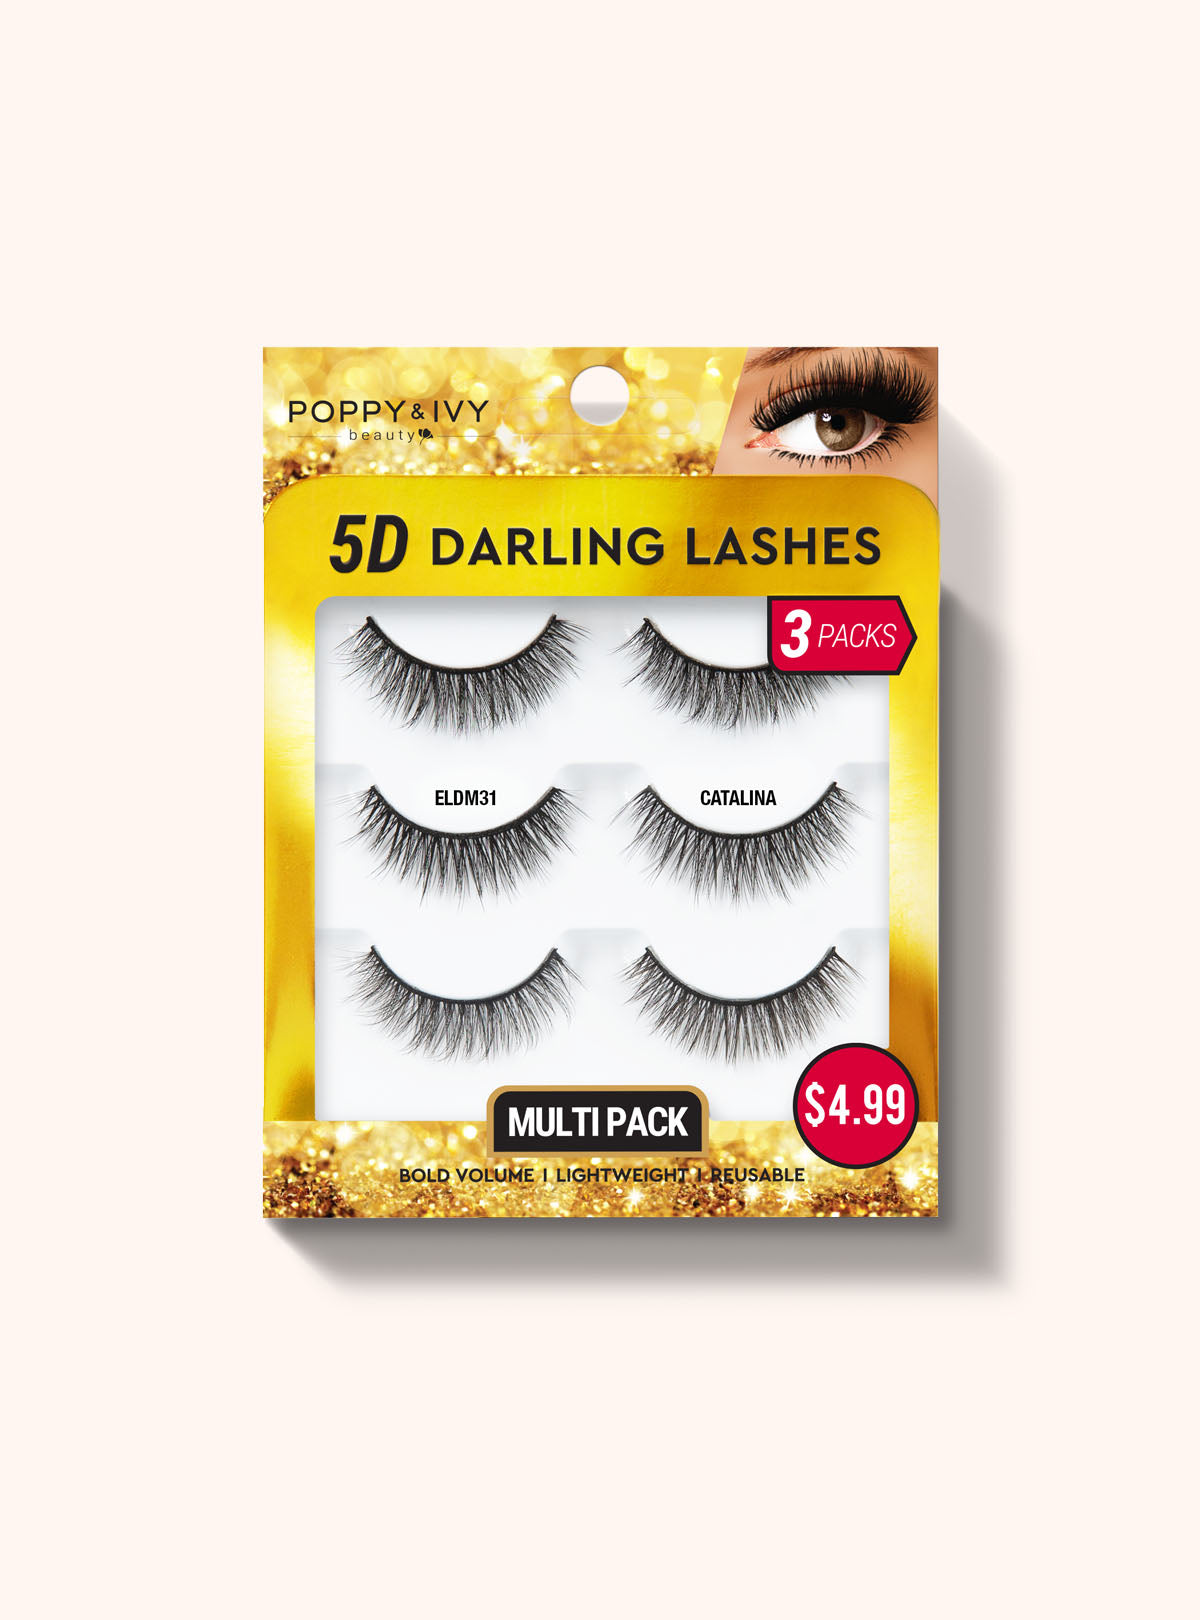 5D DARLING LASHES - 3 PAIRS || CATALINA